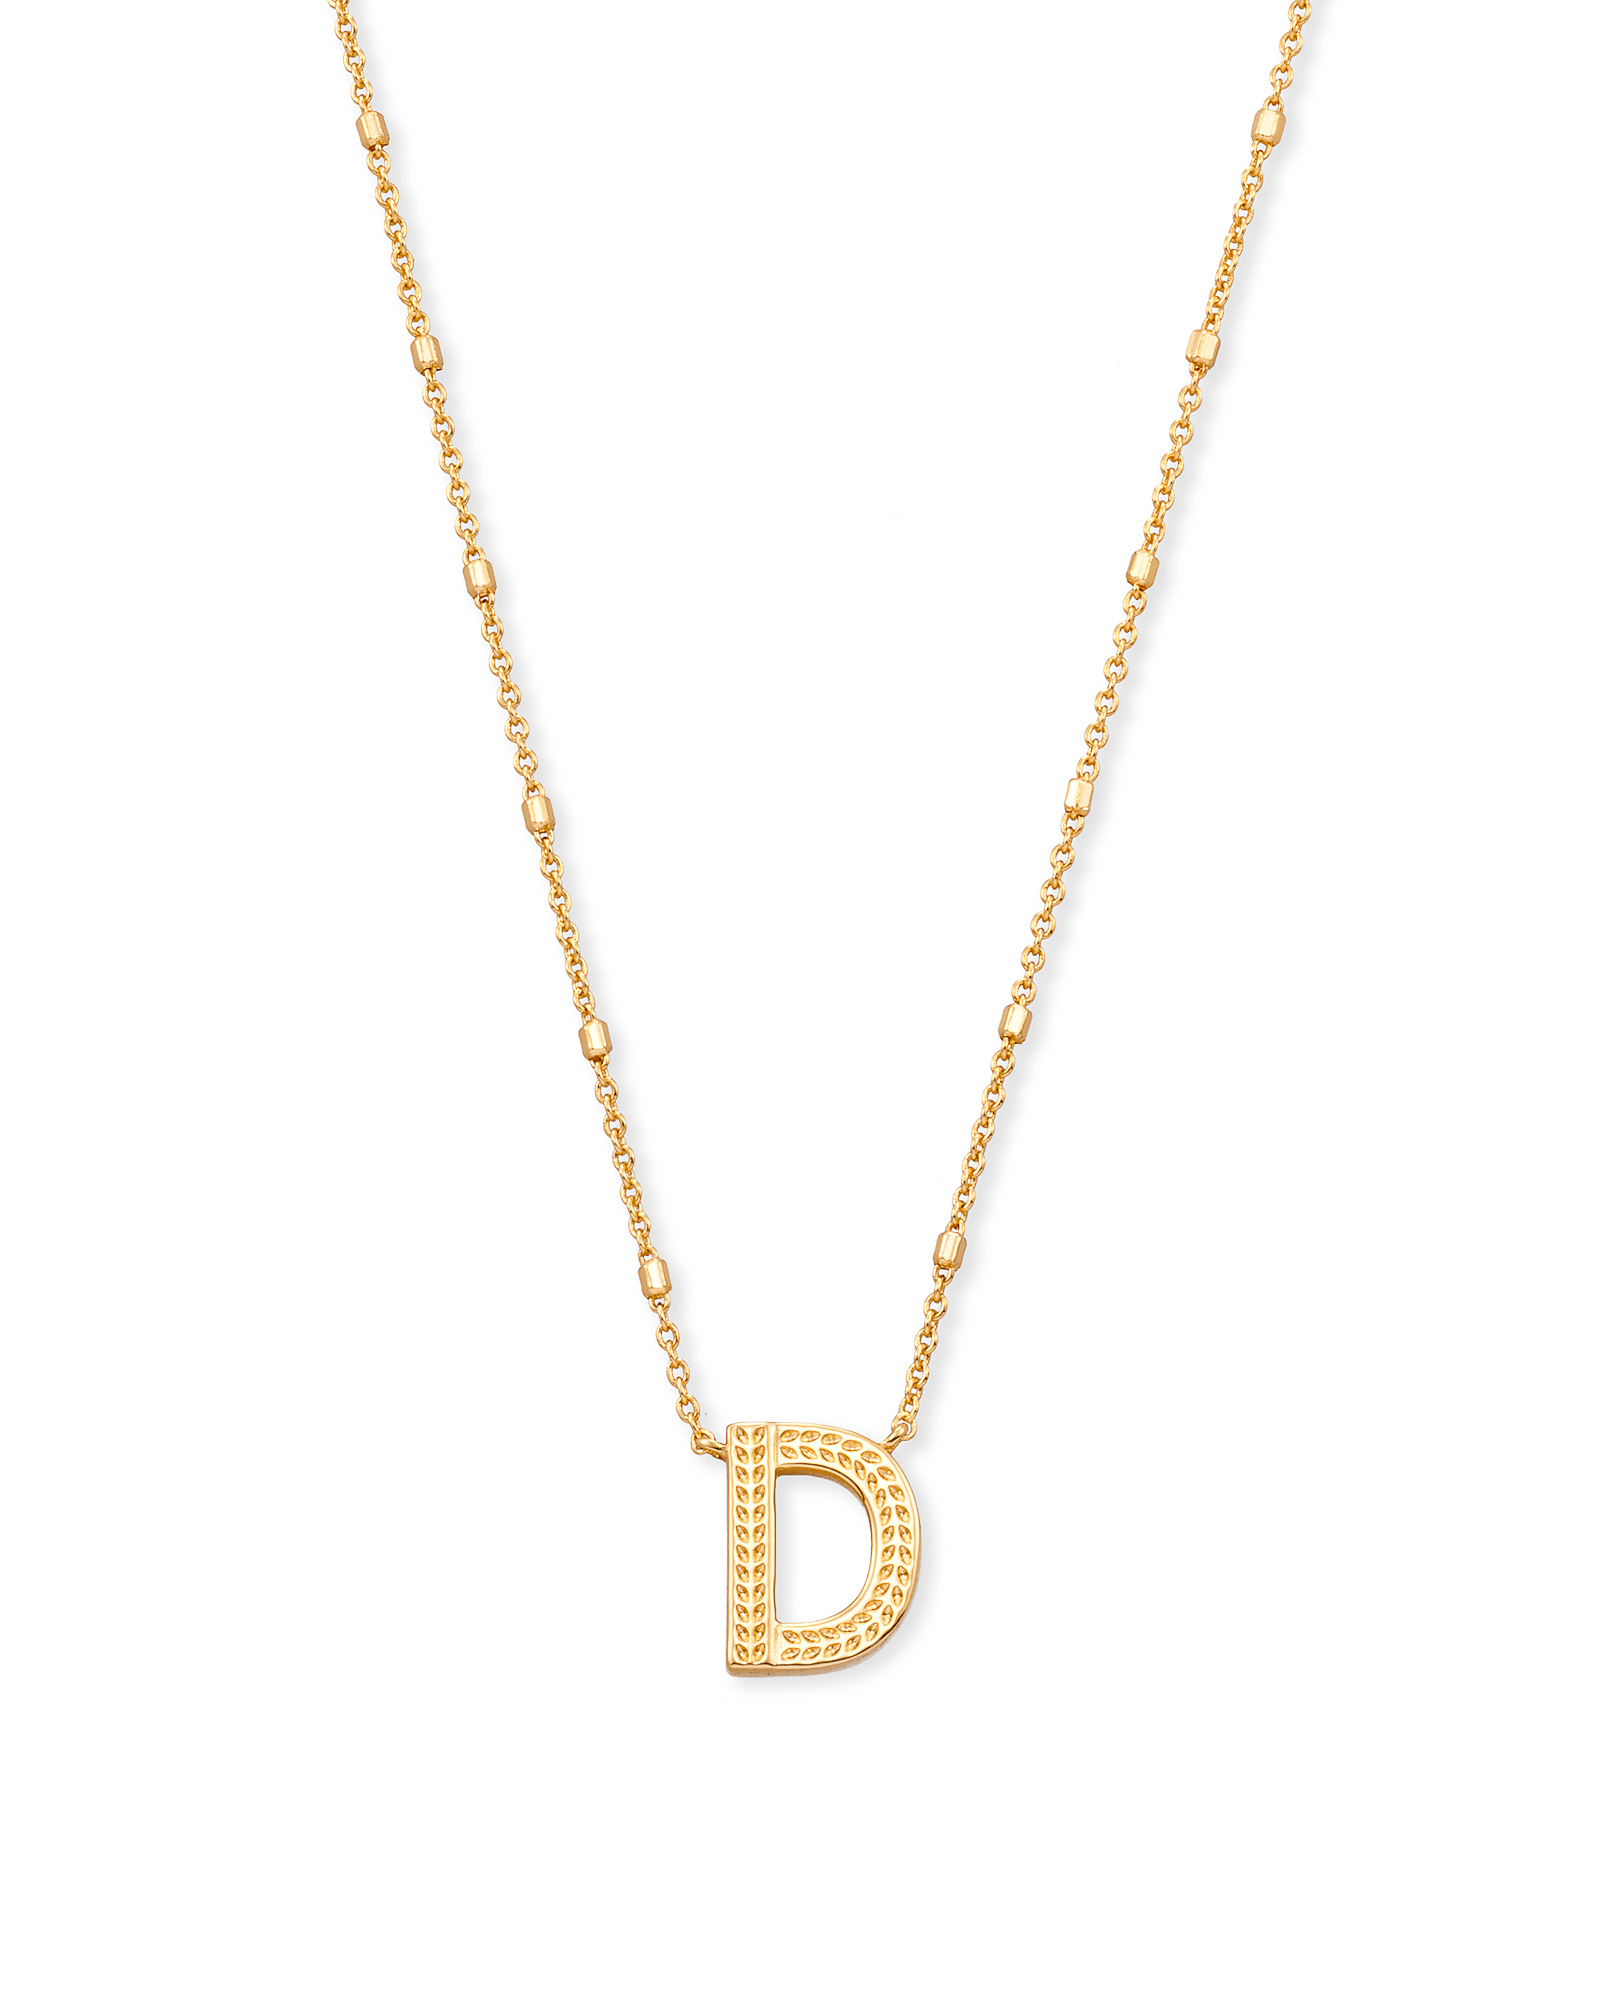 Alphabet necklace with pendant D